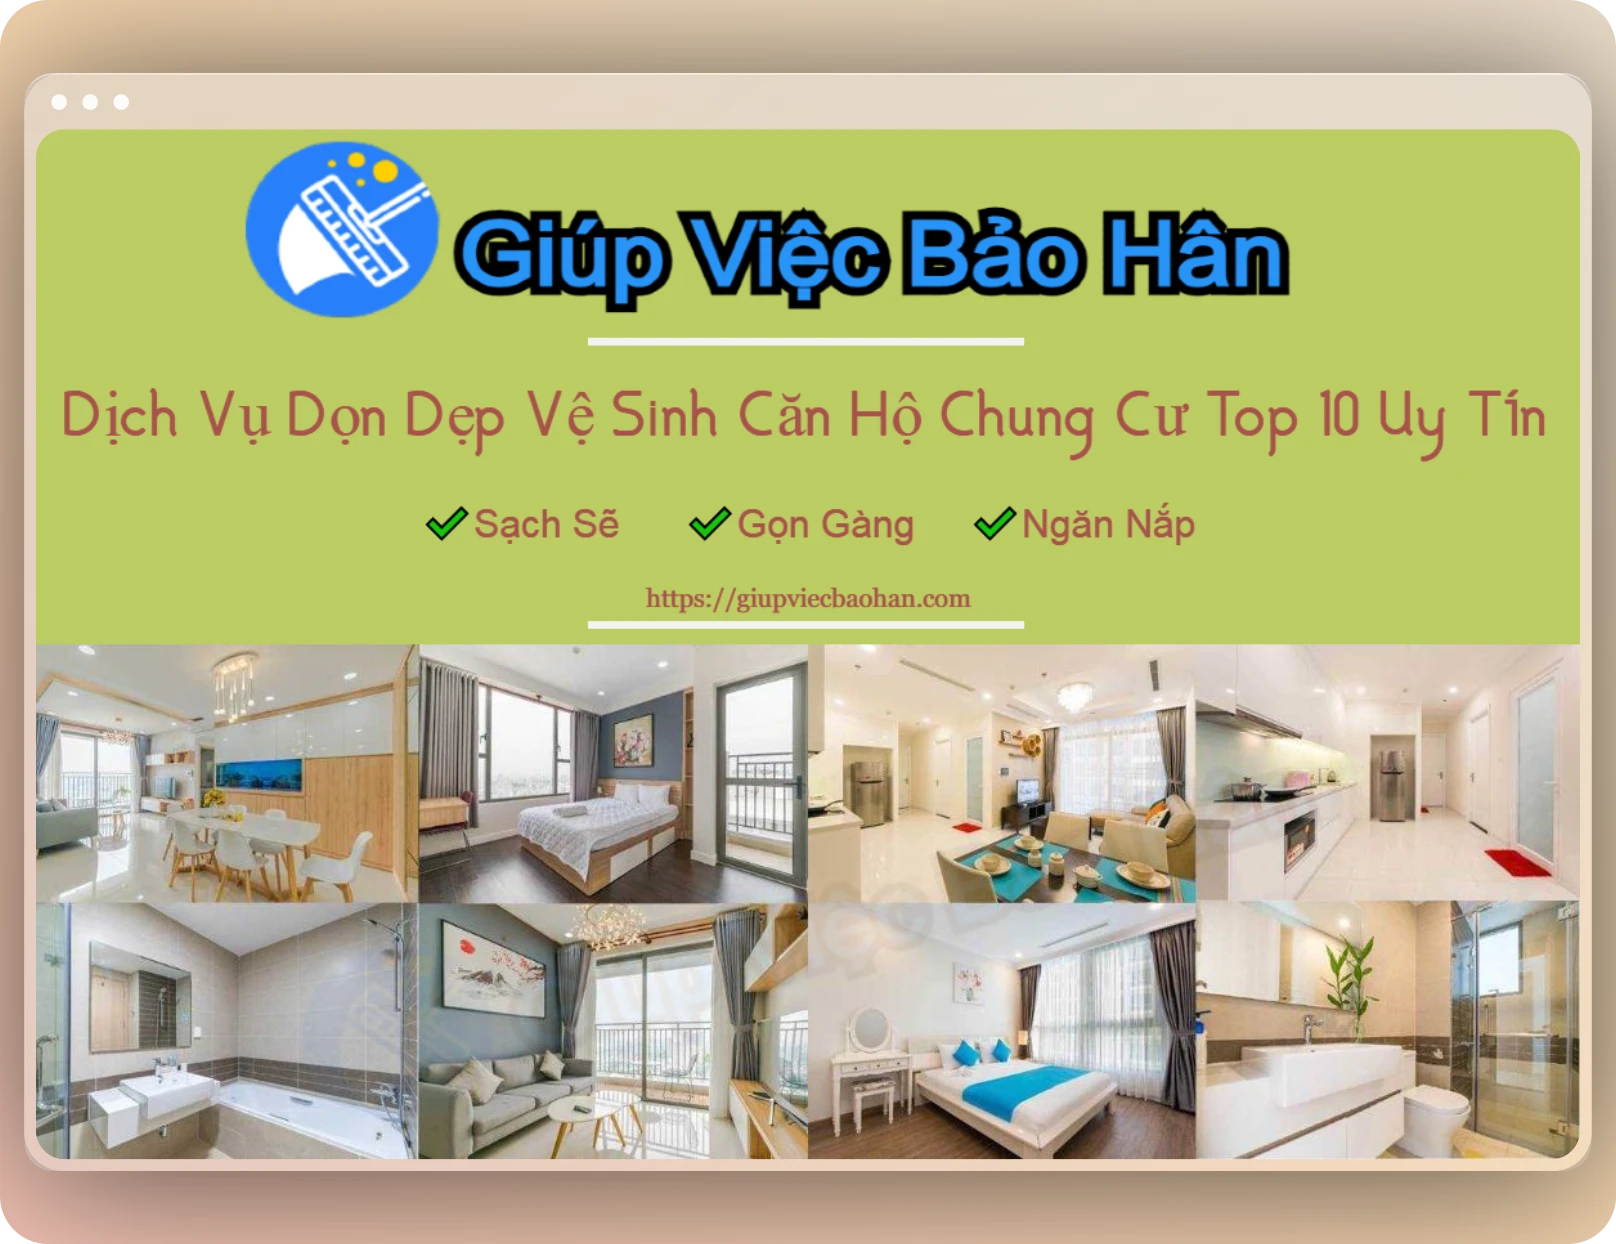 Dịch vụ dọn dẹp vệ sinh chung cư tại TPhcm, Hà Nội